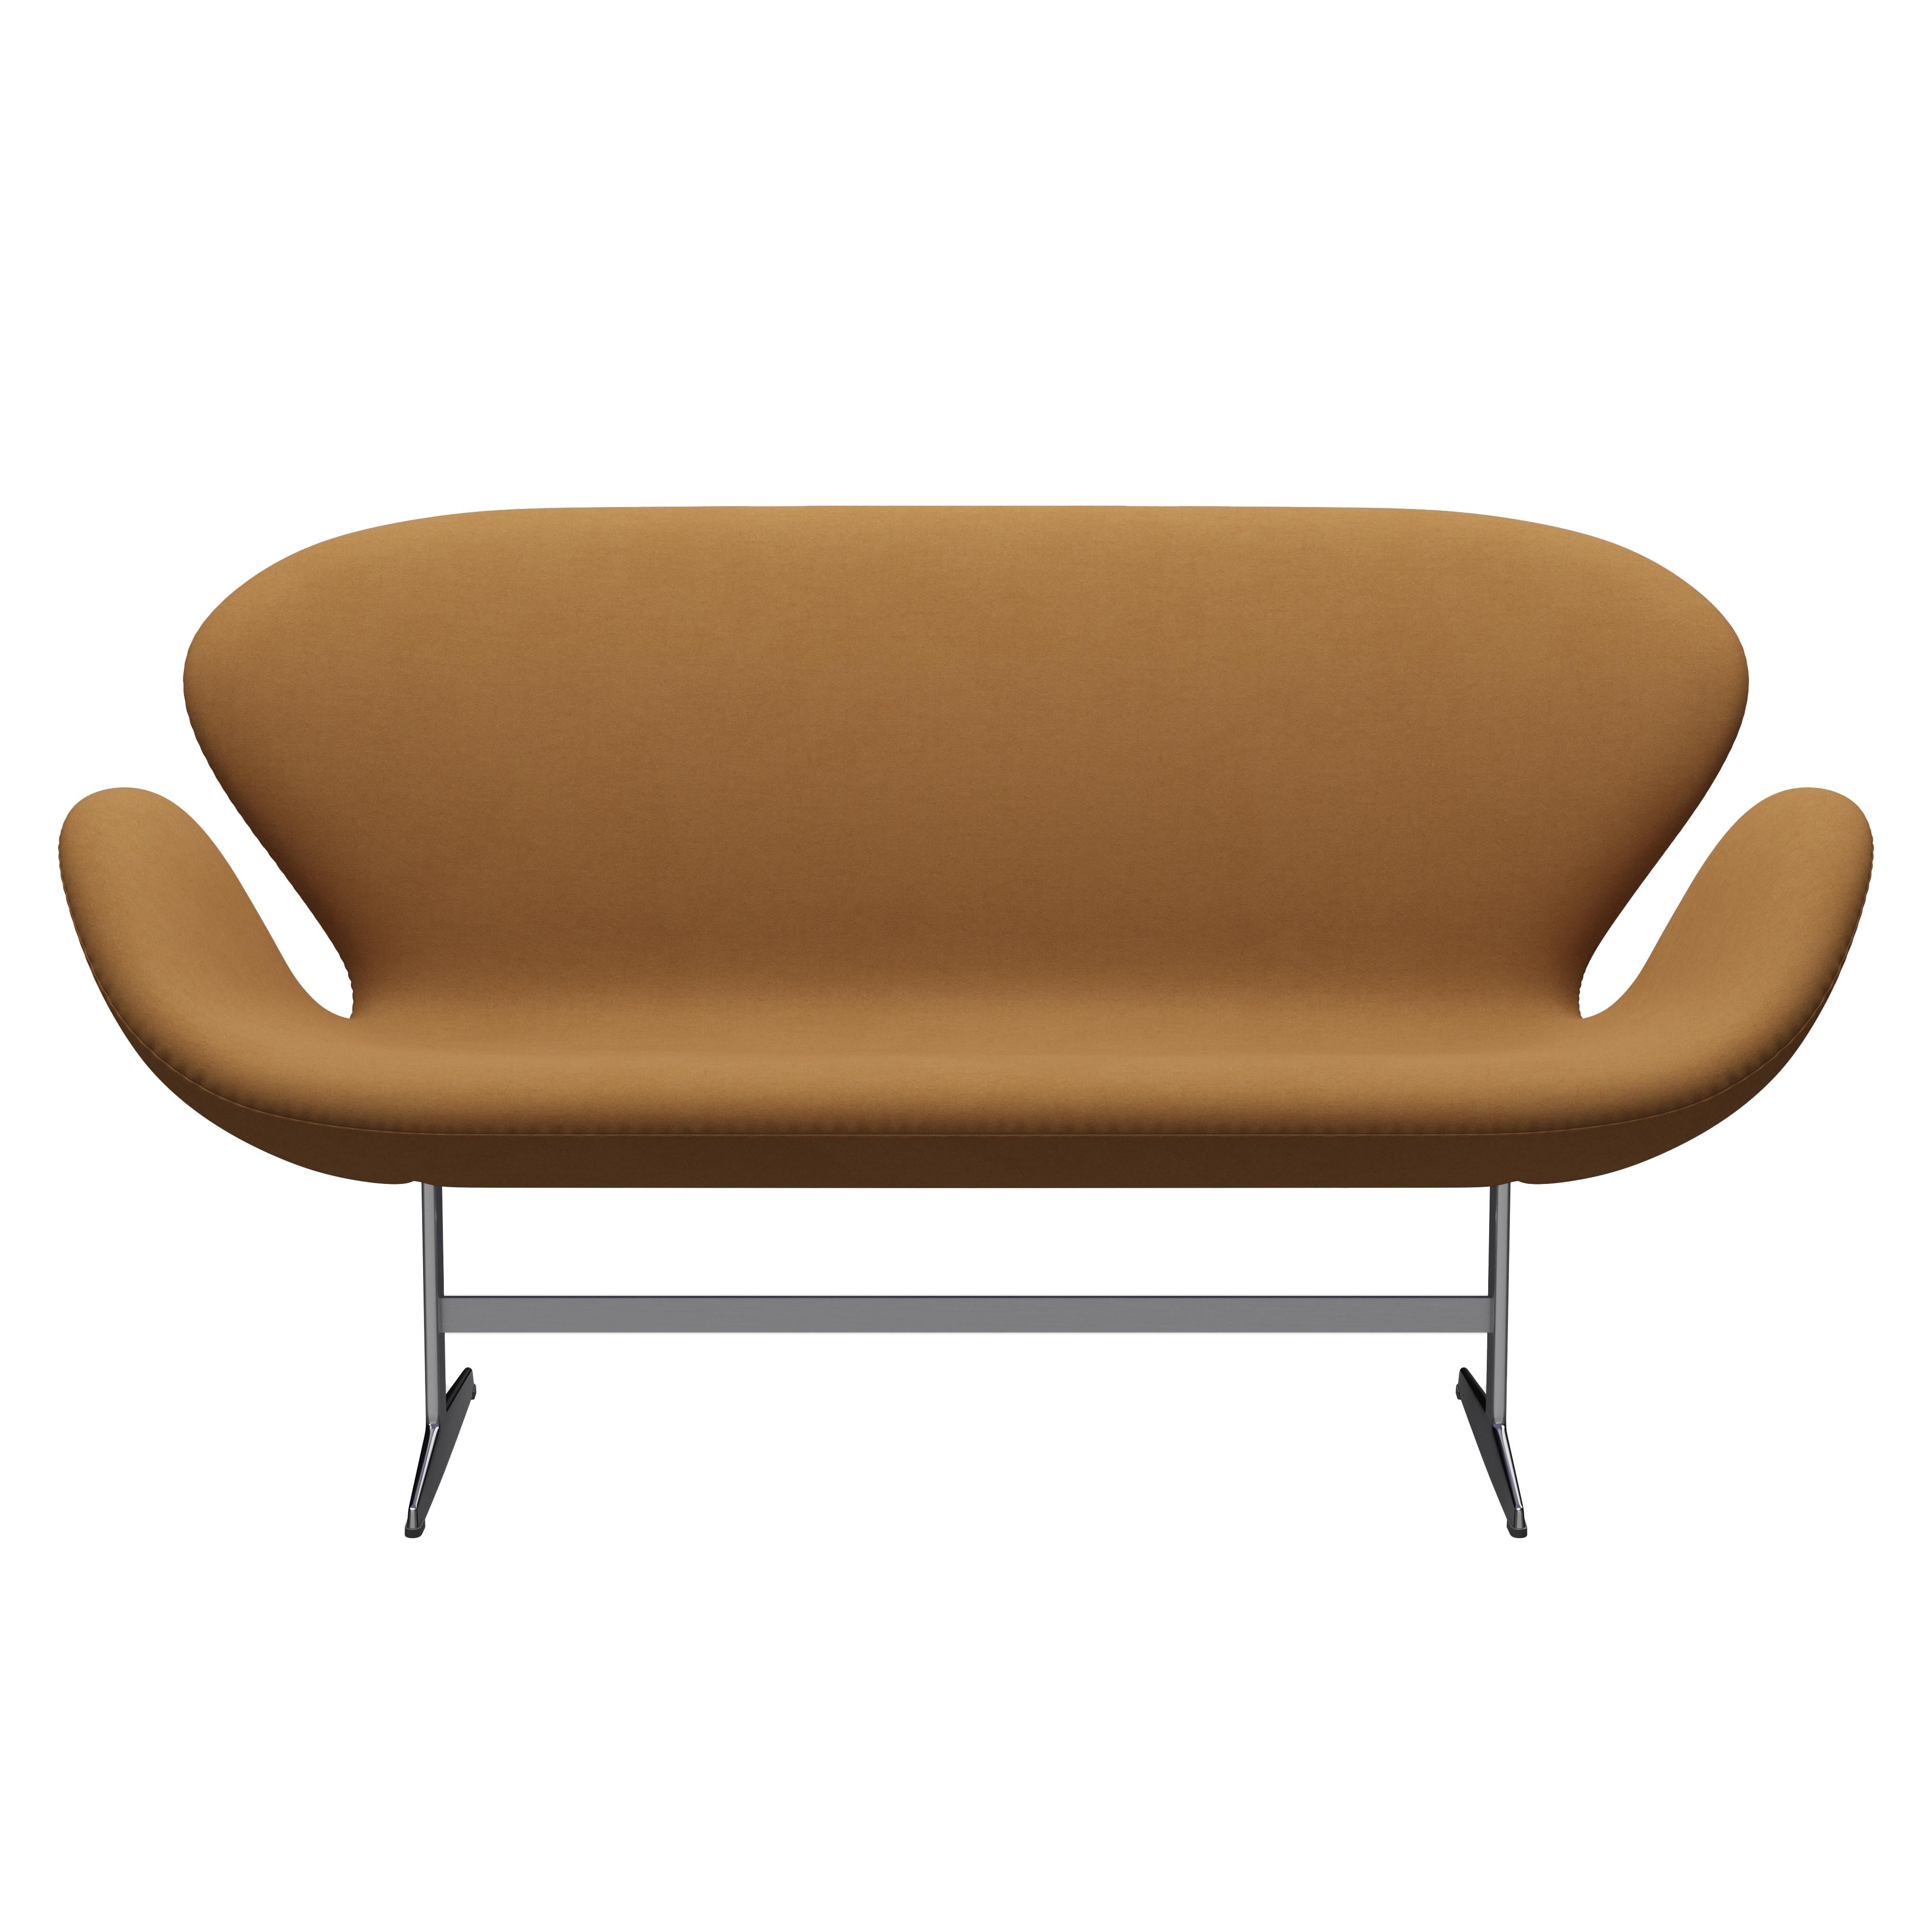 Arne Jacobsen 'Swan' Sofa for Fritz Hansen in Fabric Upholstery (Cat. 3) For Sale 6